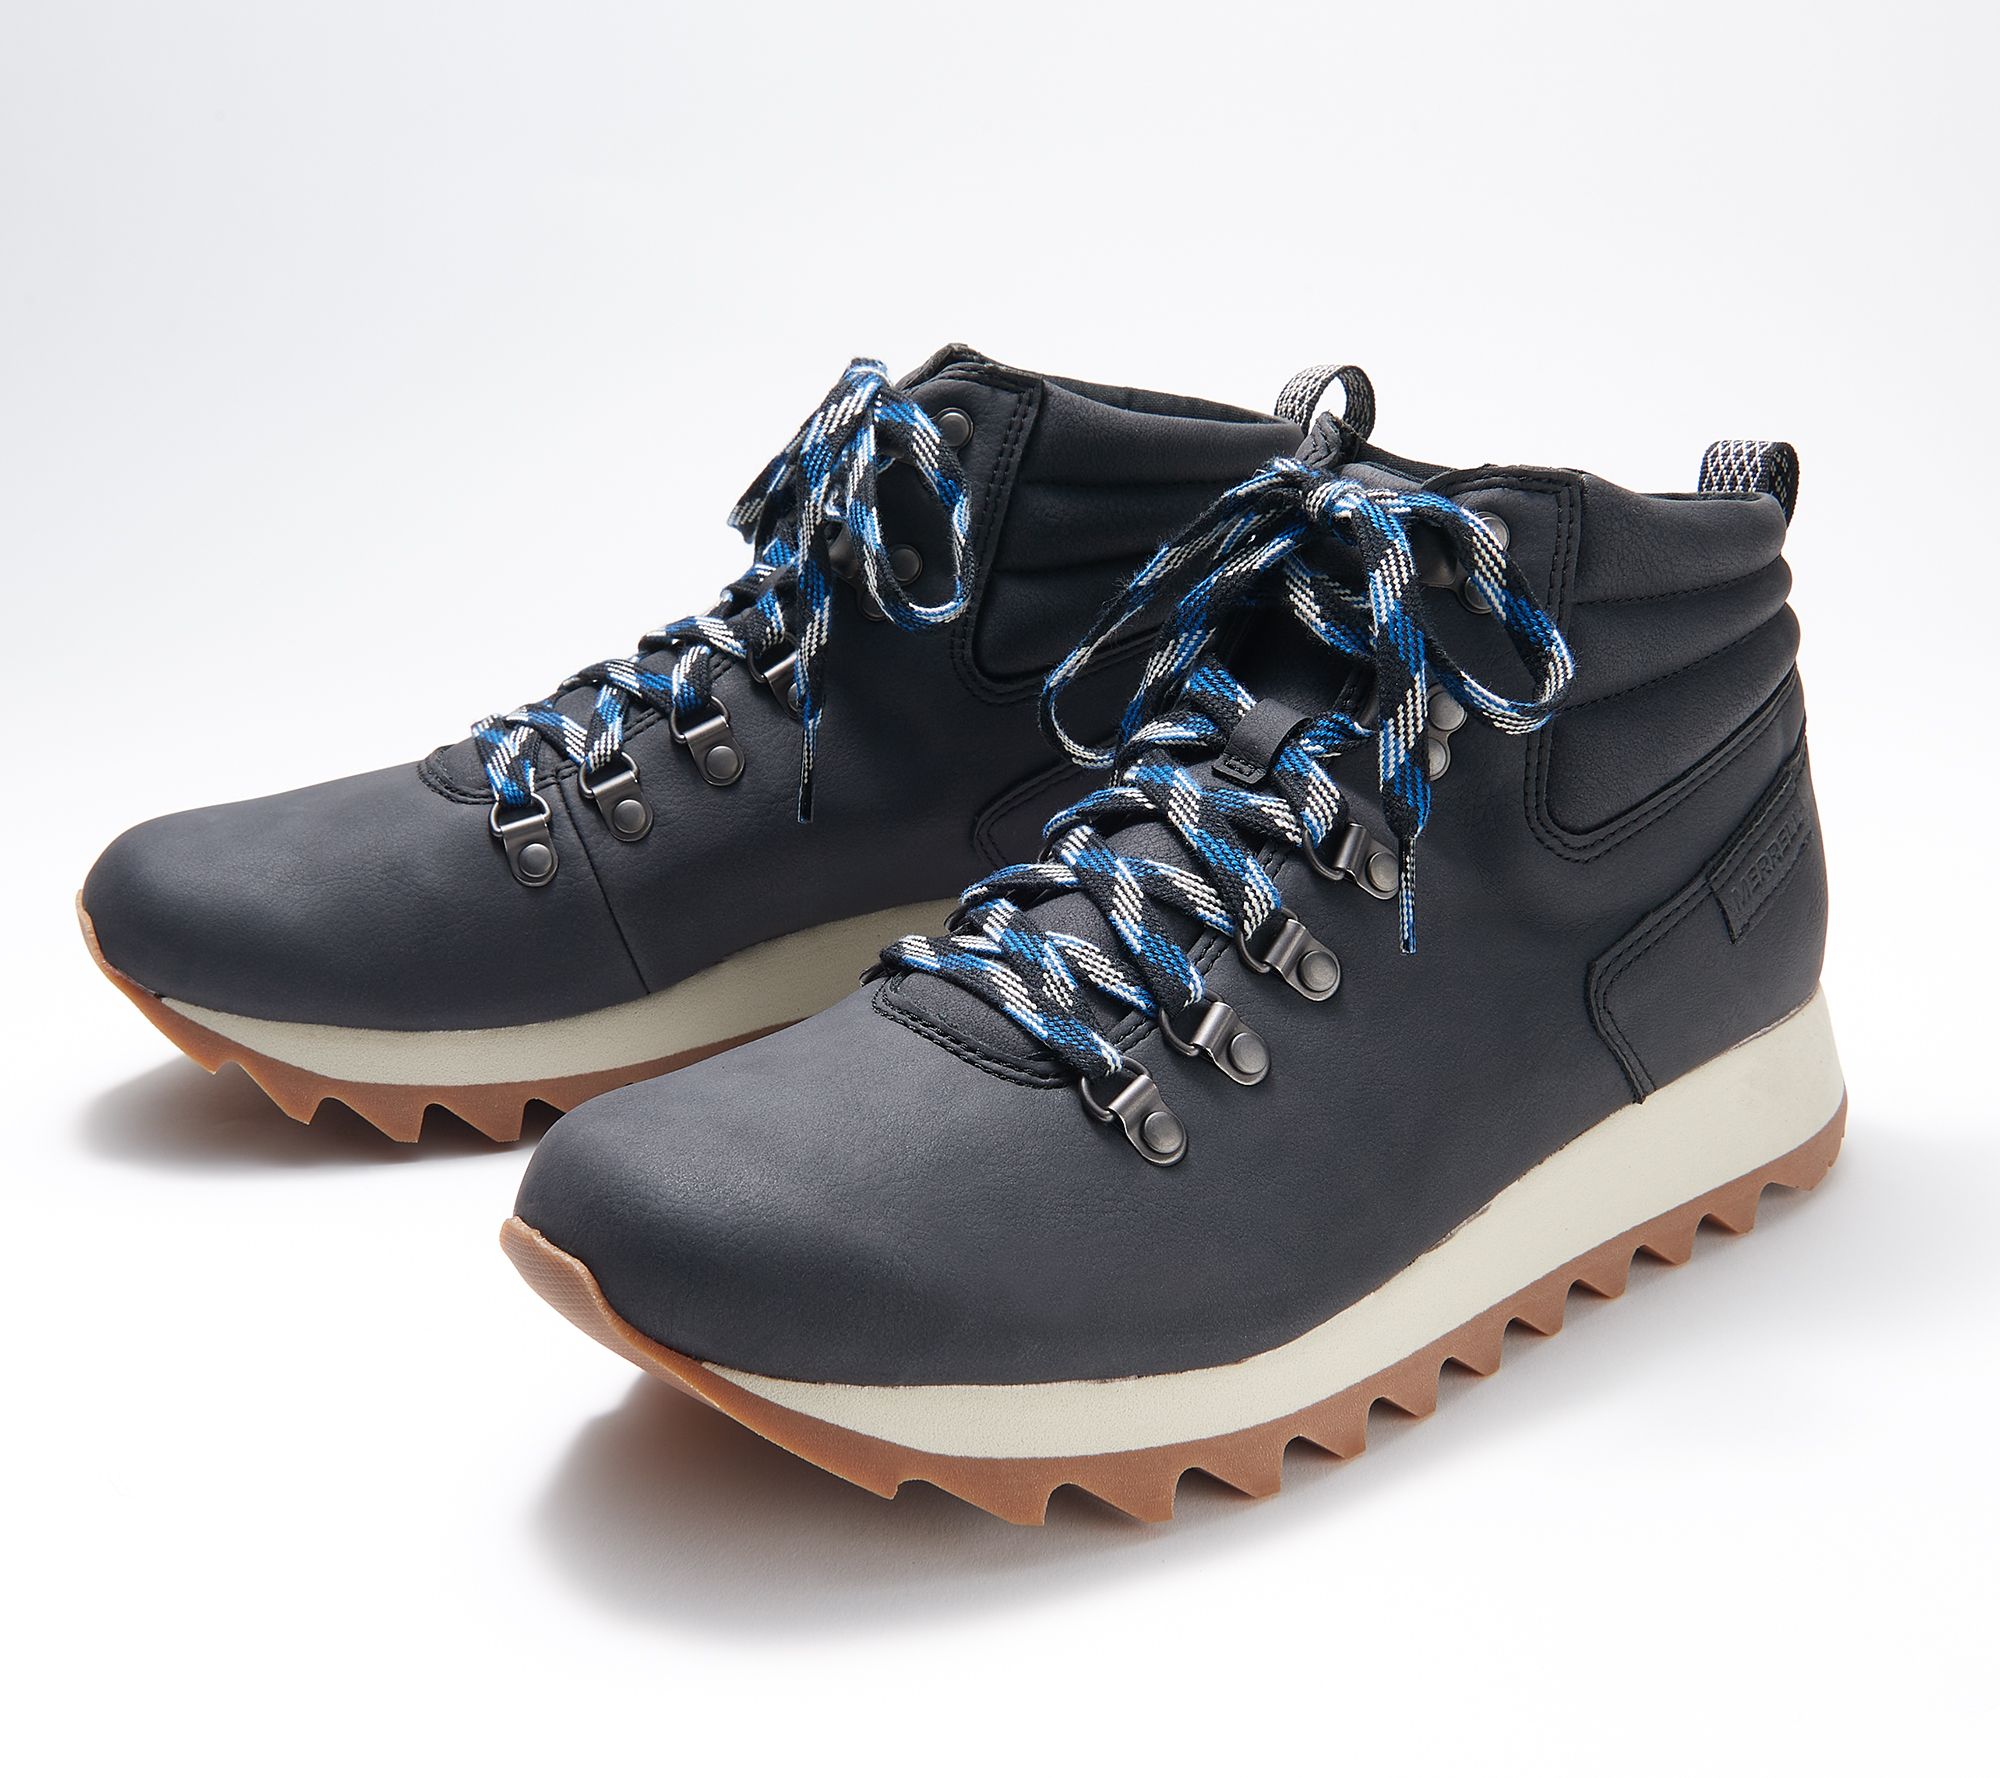 wang Ambient rijk Merrell Lace-Up Hiking Boots - Alpine Hiker - QVC.com